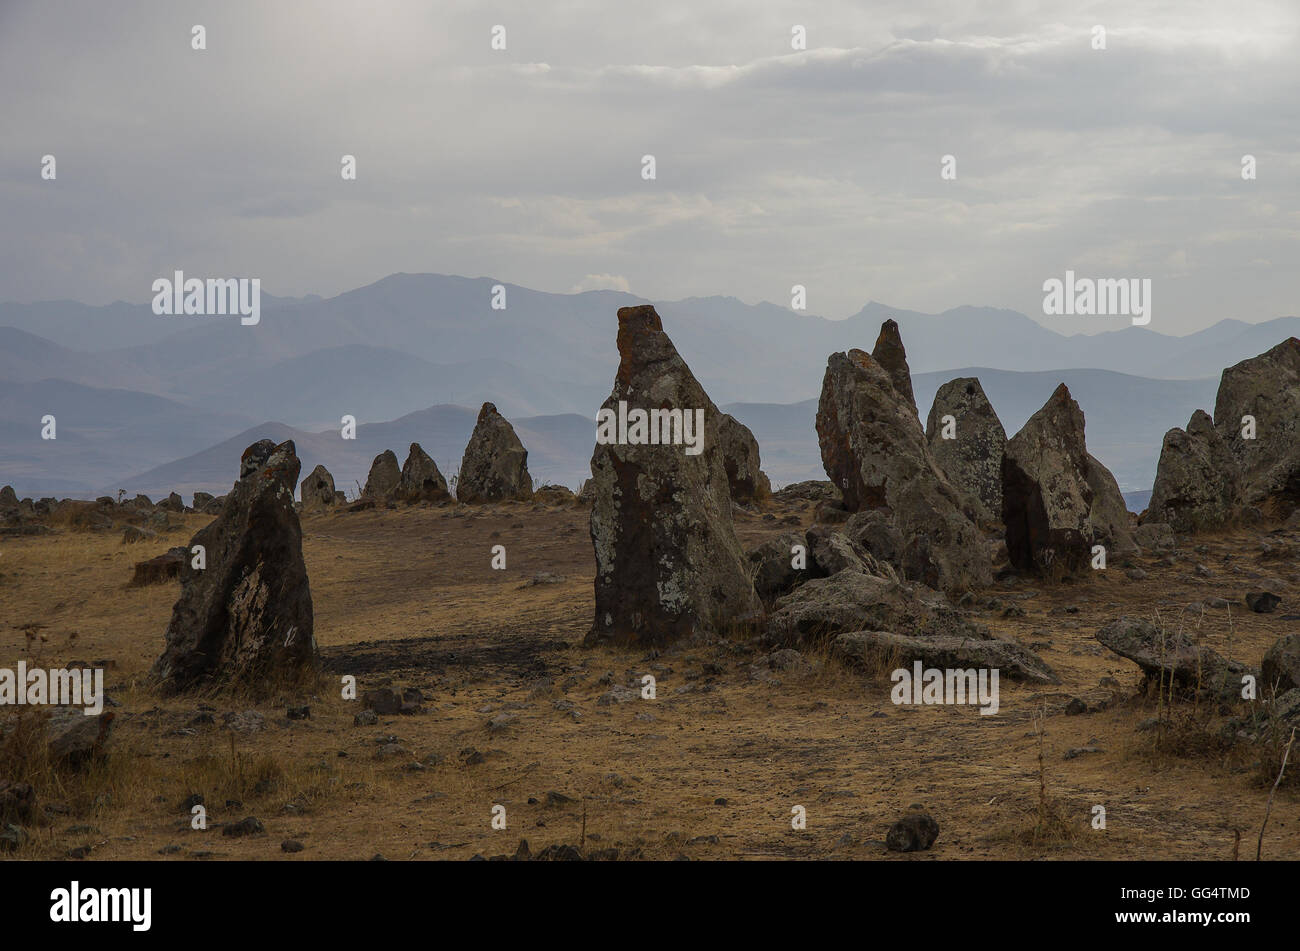 Großen megalithischen Menhire von Zorats Karer (Carahunge) - Vorgeschichte Megalith-Monument in Armenien Stockfoto